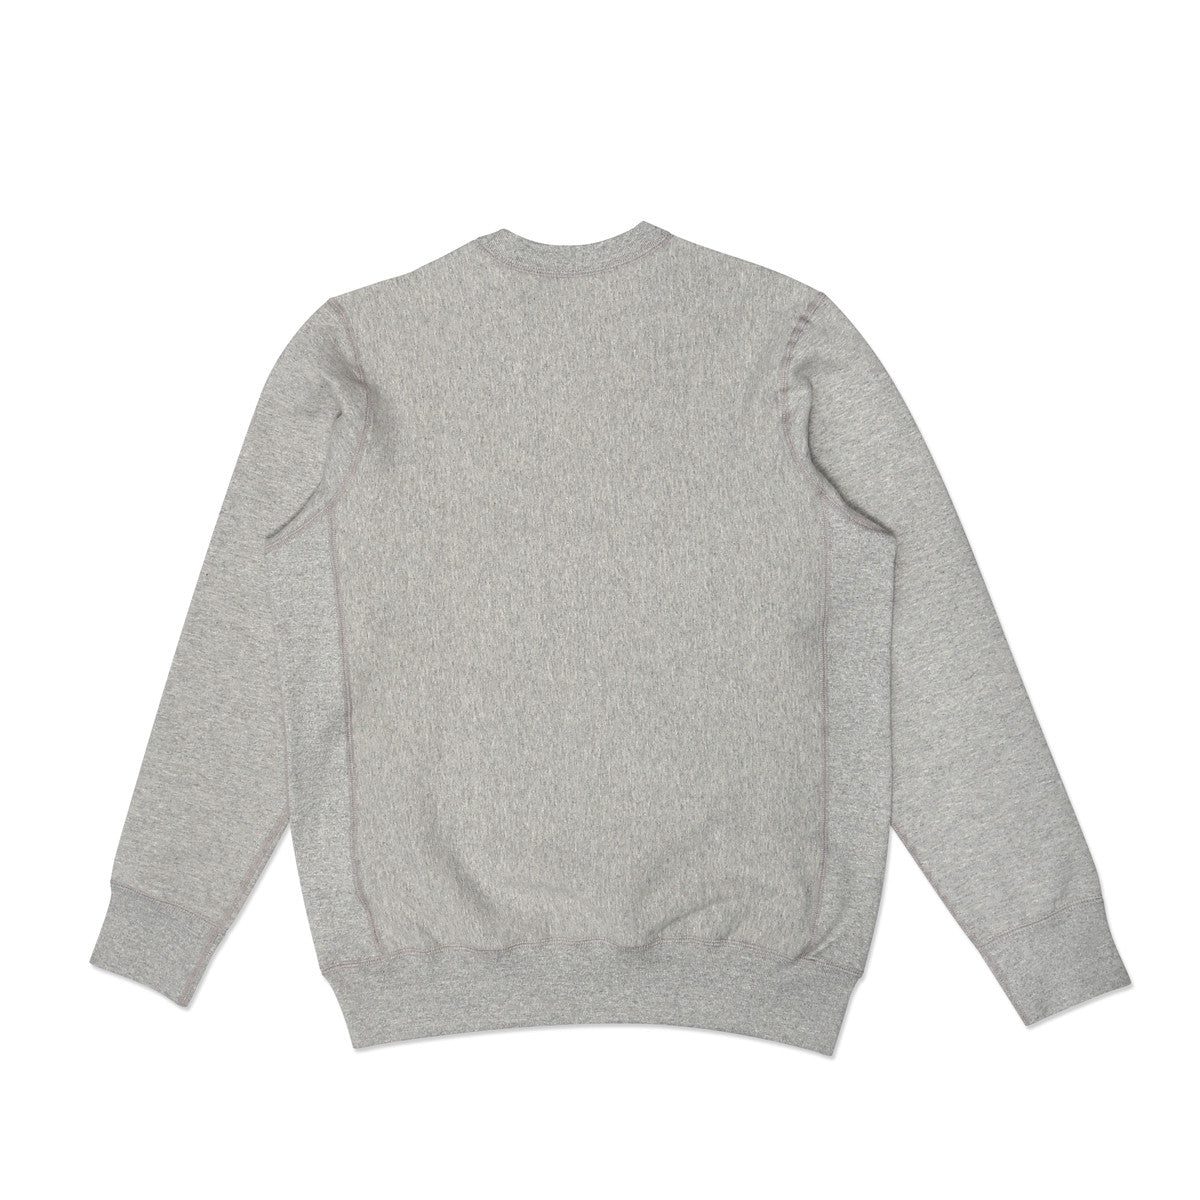 Crewneck Sweatshirt Heather Grey 400 GSM Fleece – House Of Blanks